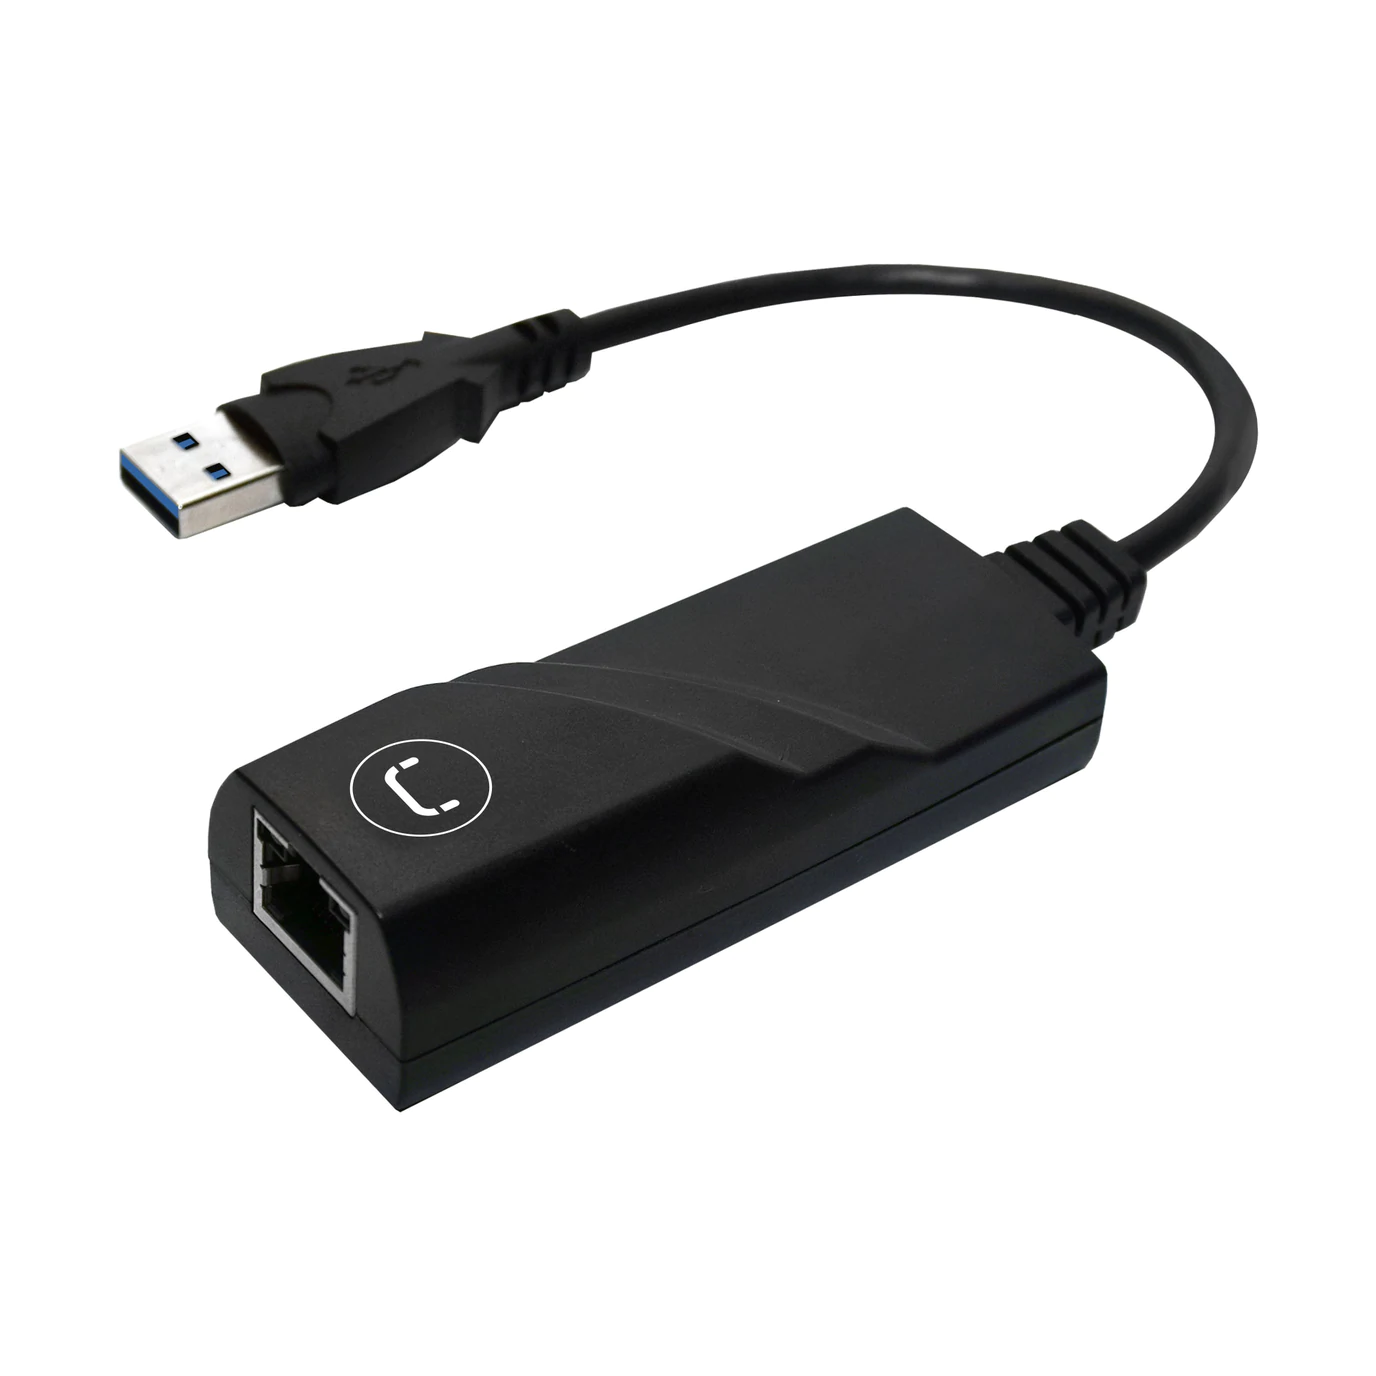 dyb Dodge varme USB A 3.0 TO GIGABIT ETHERNET ADAPTER AD3003BK | Unno Tekno